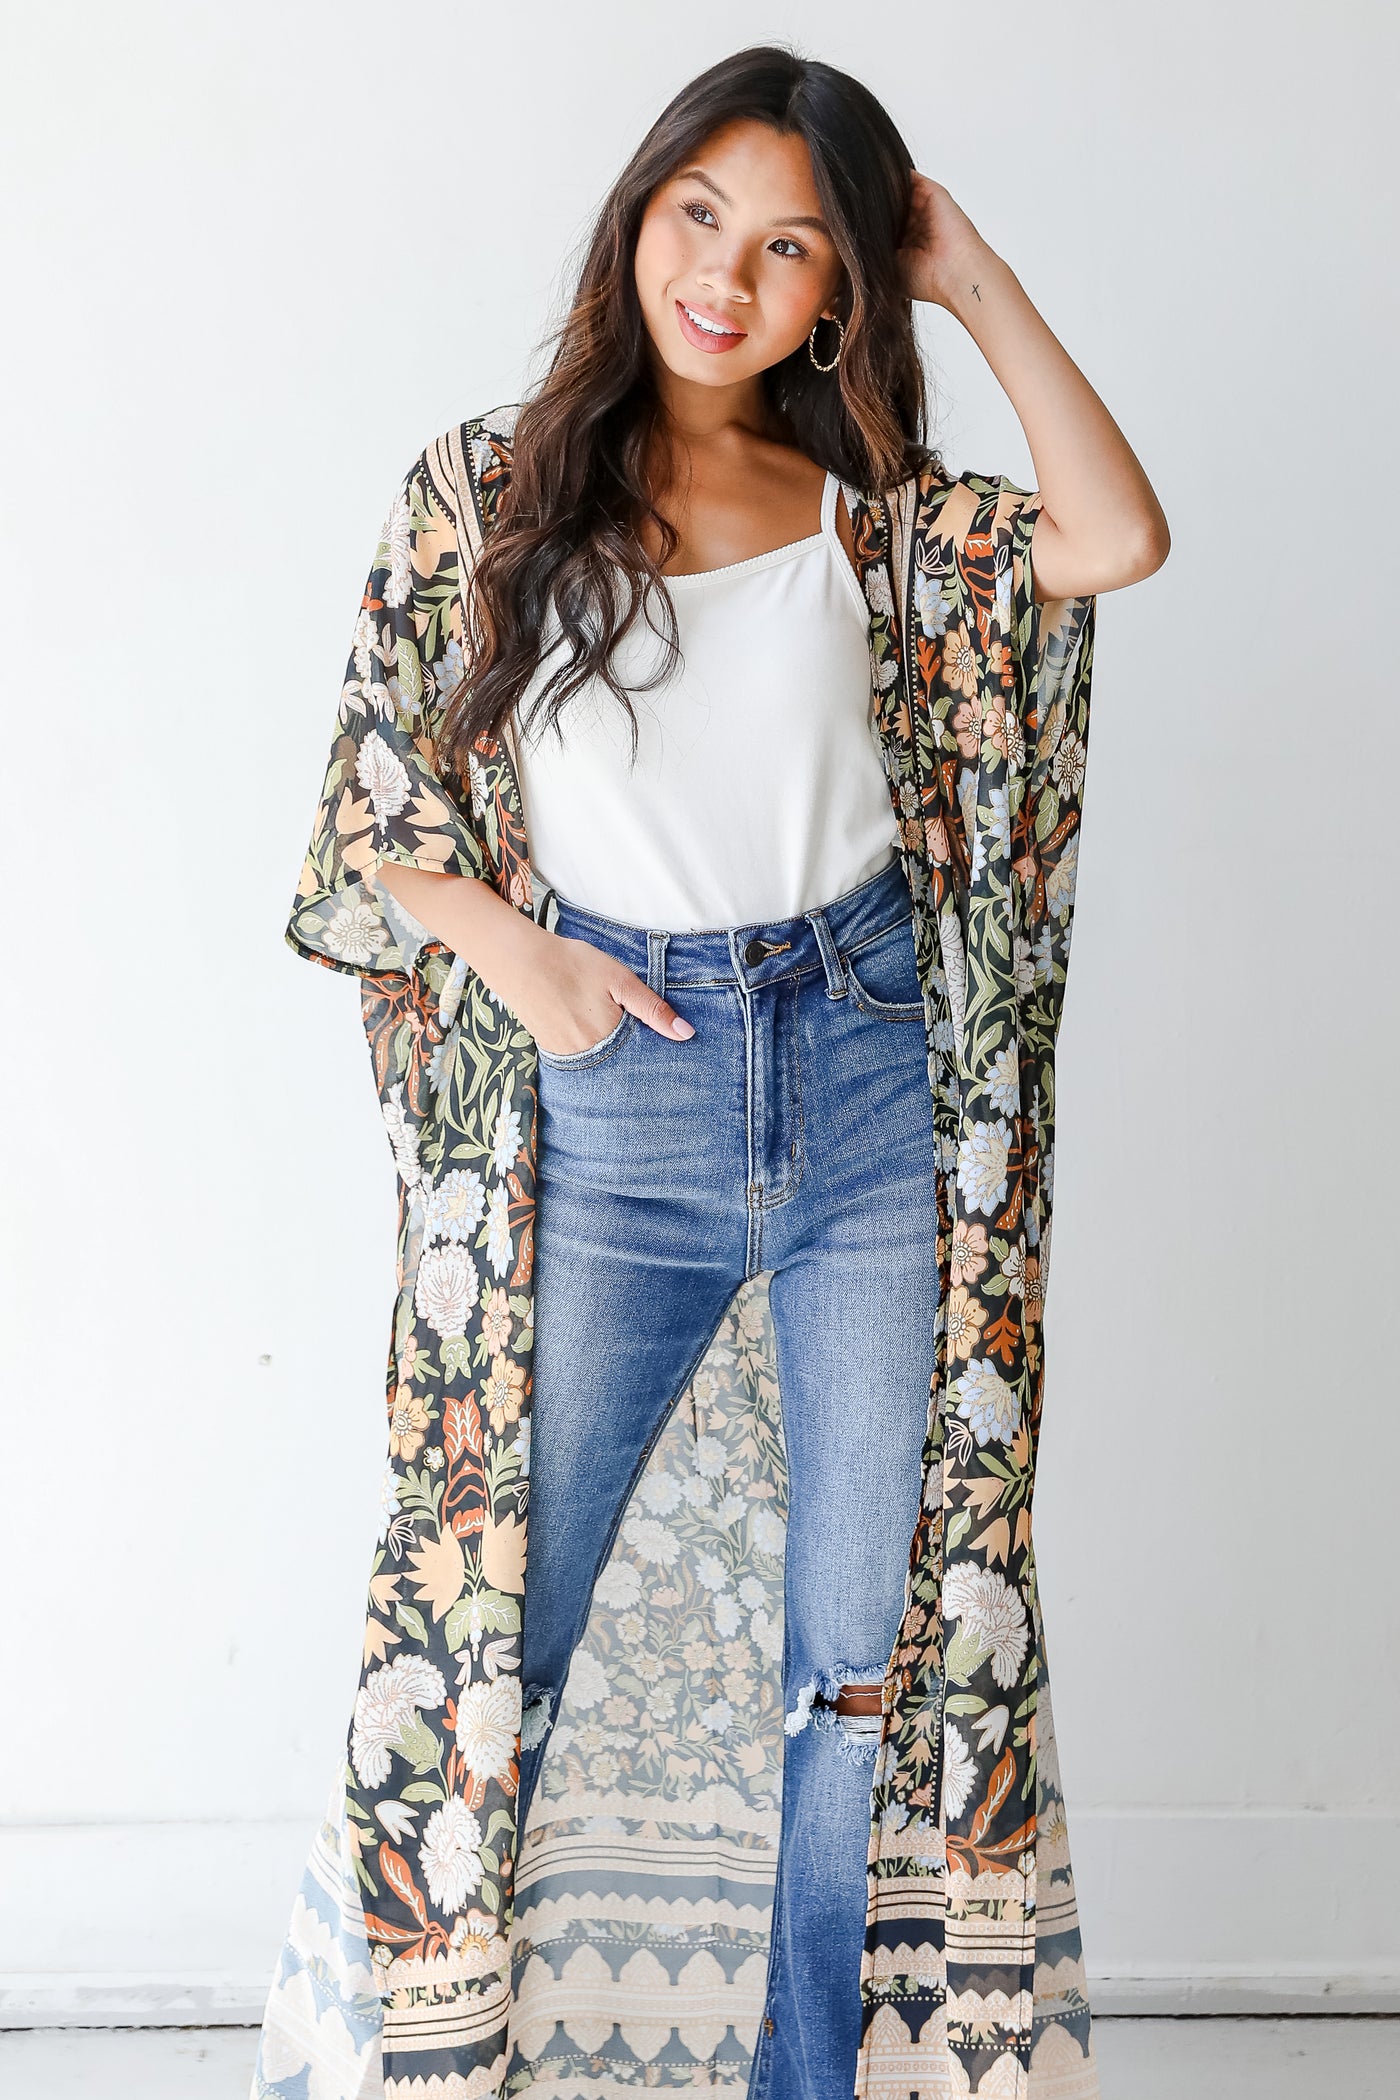 model wearing a floral kimono